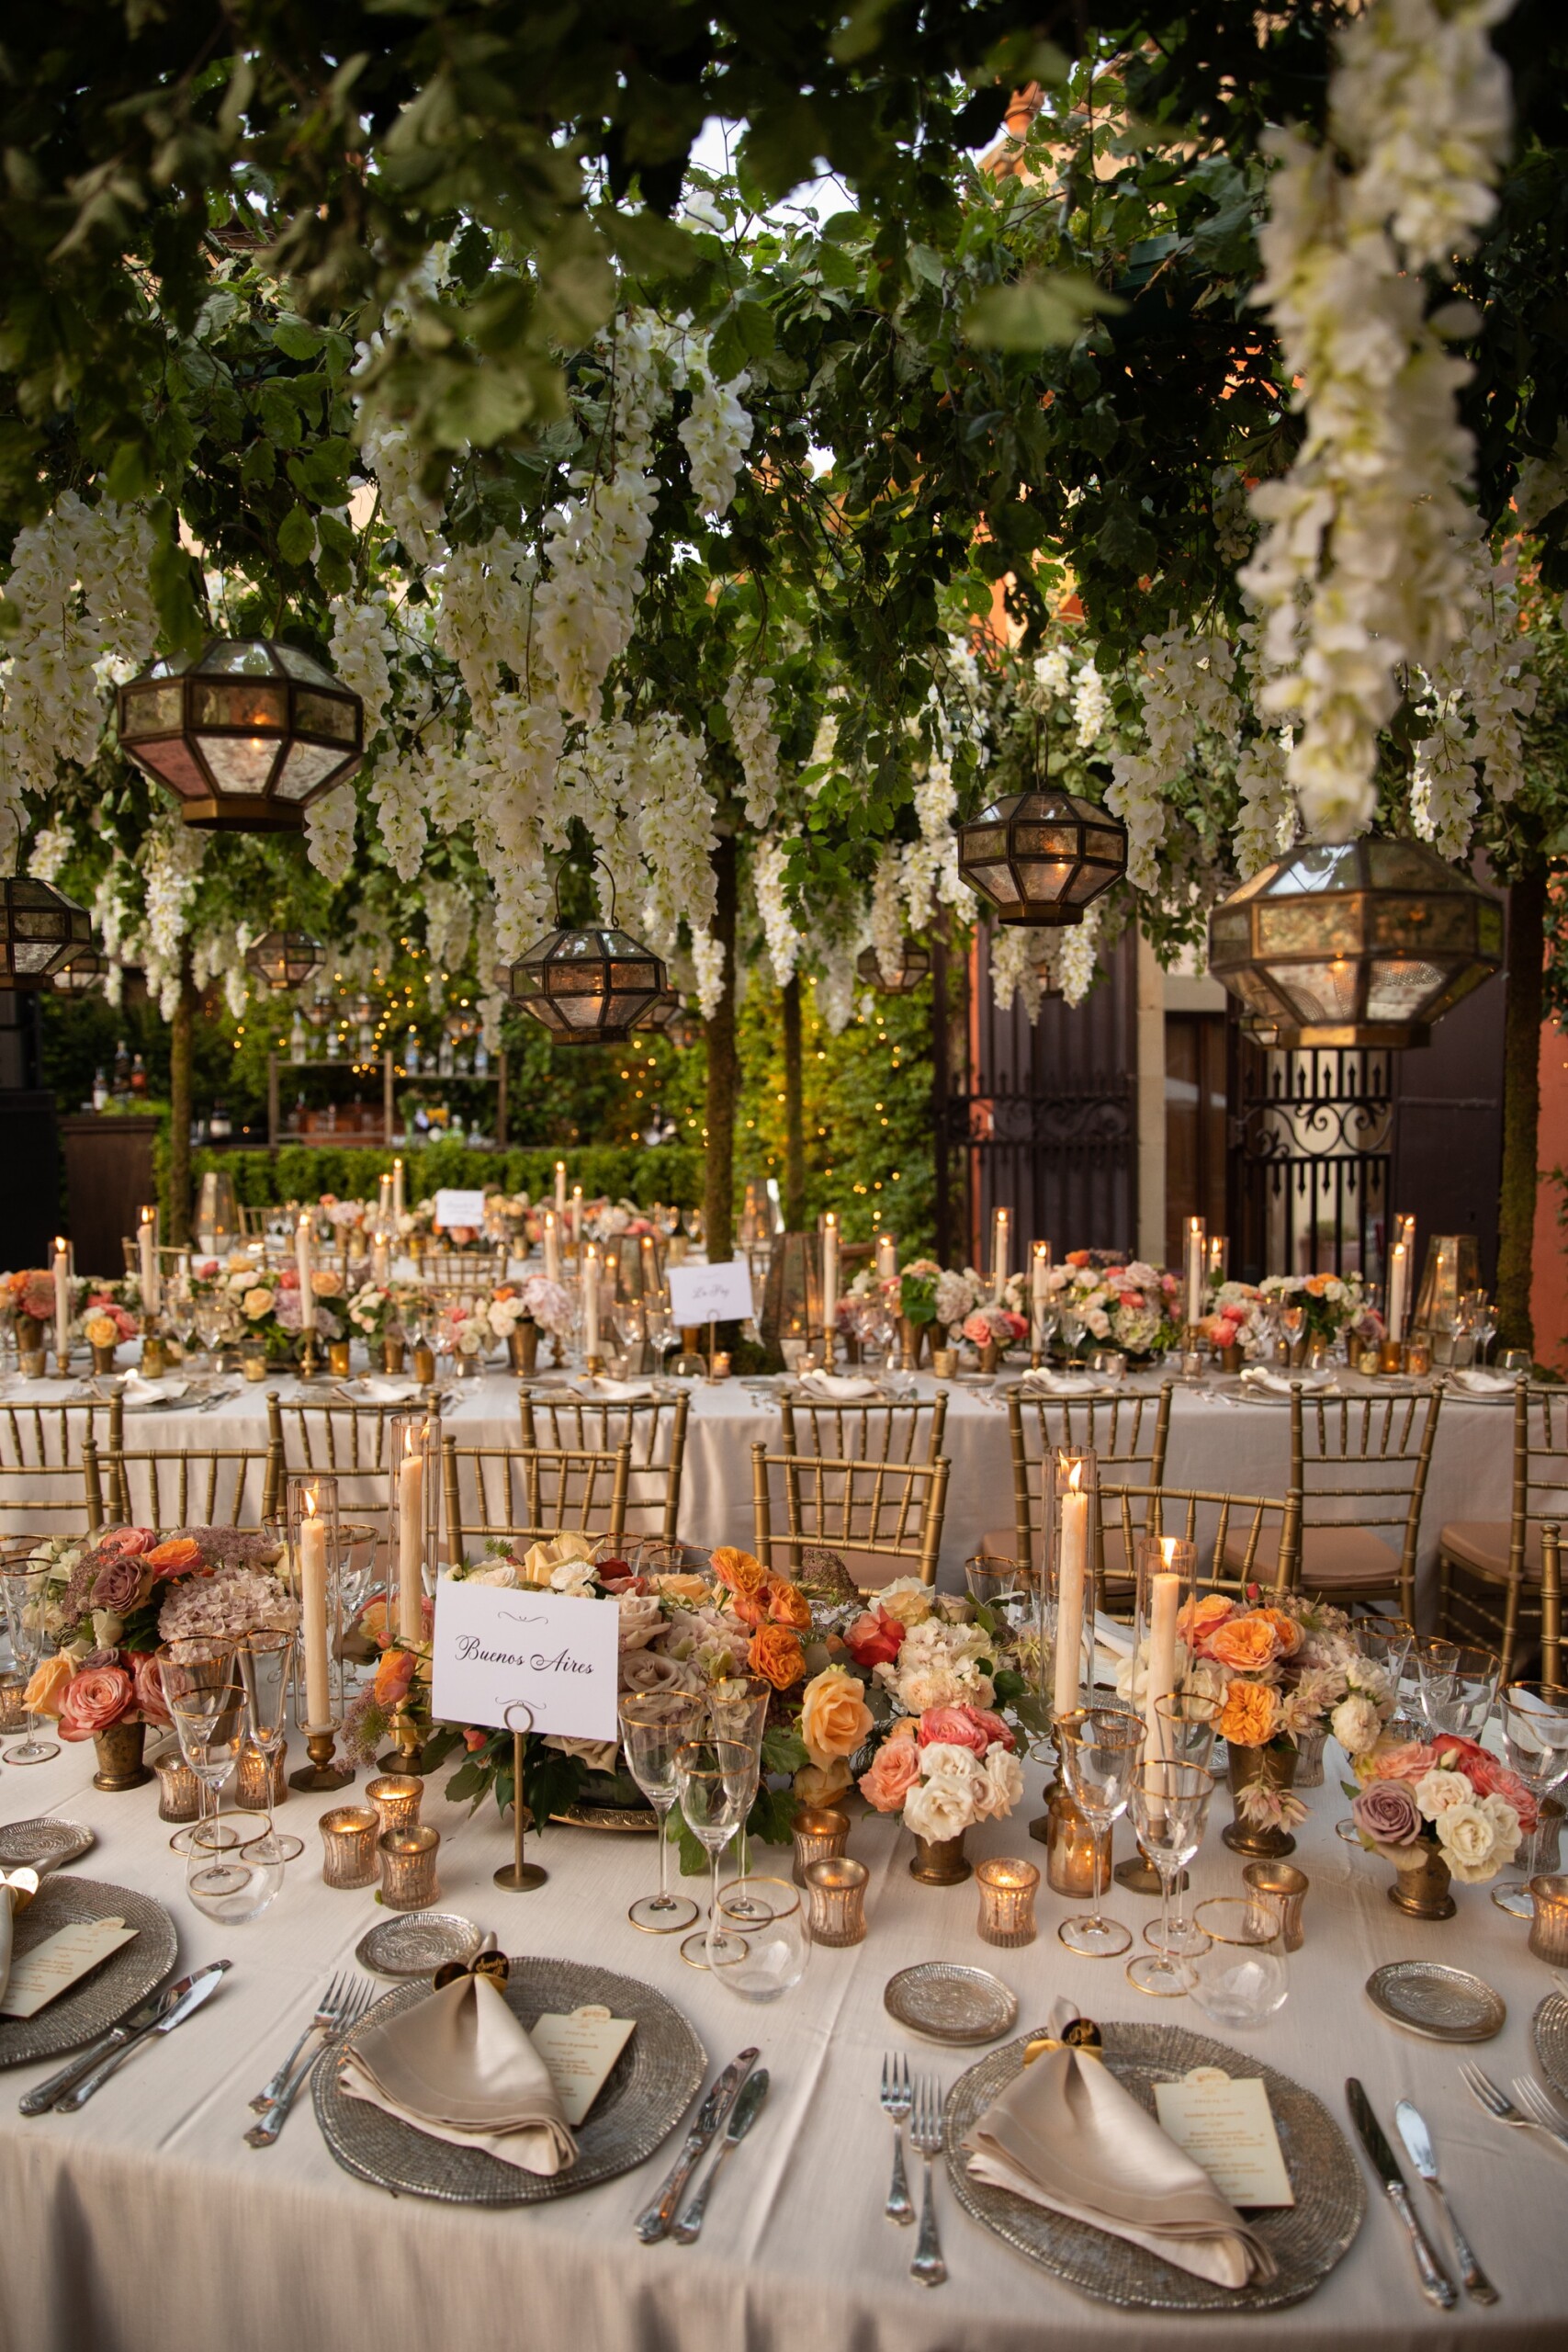 Secret garden style as wedding decor in Italy